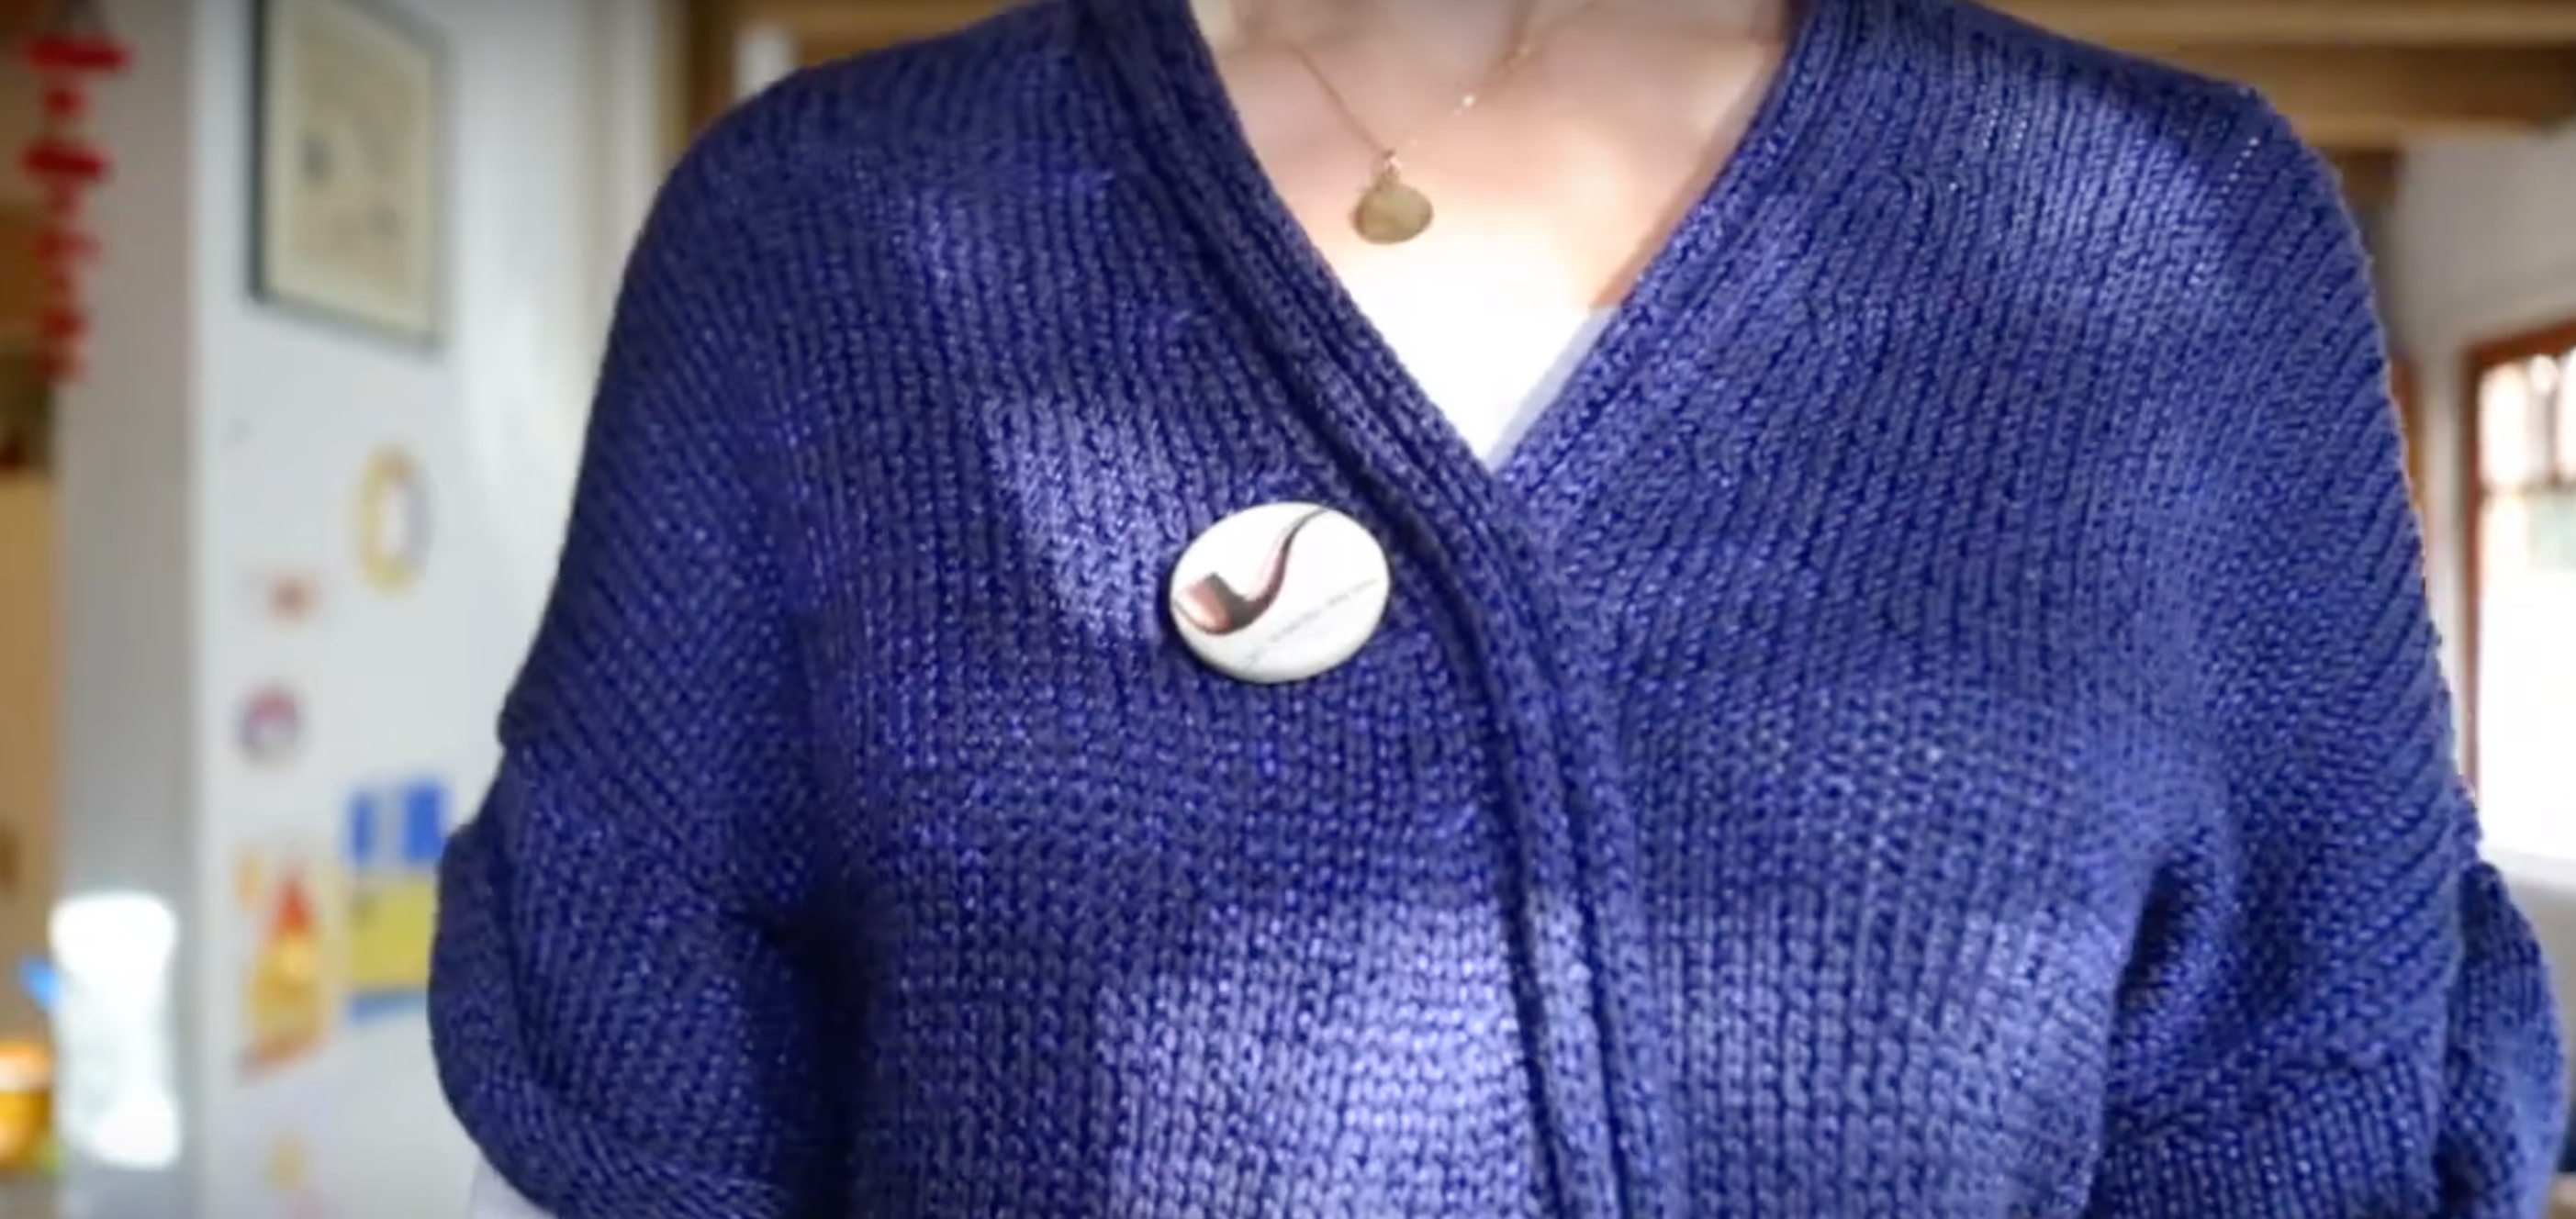 Cargar video: button art